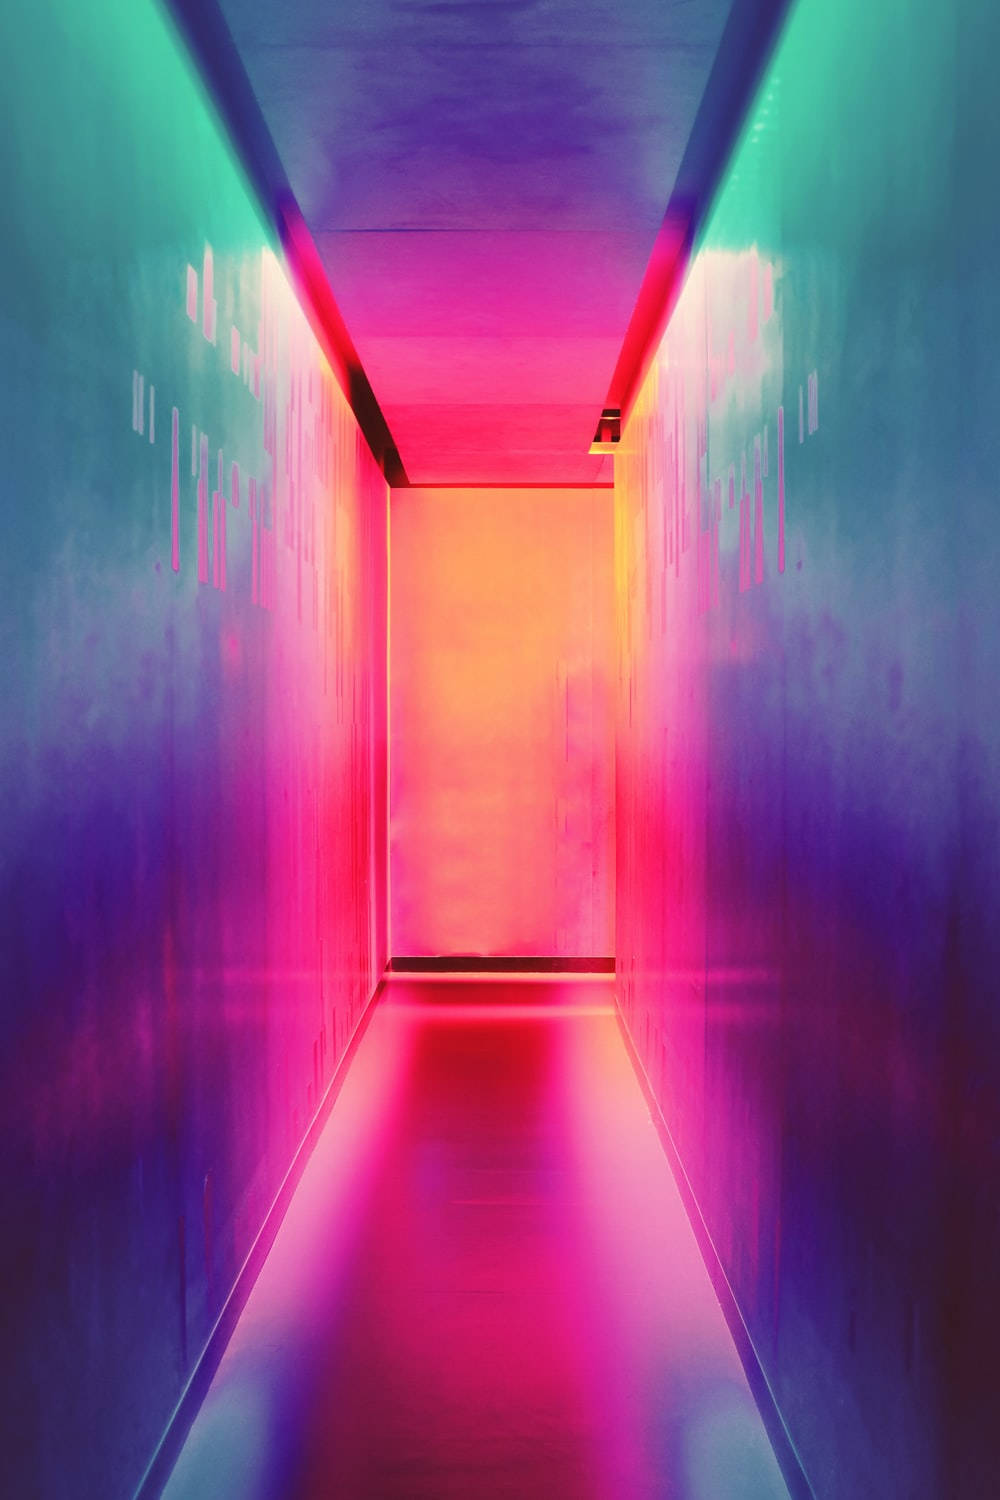 The Neon Hallway Iphone 11 Wallpaper